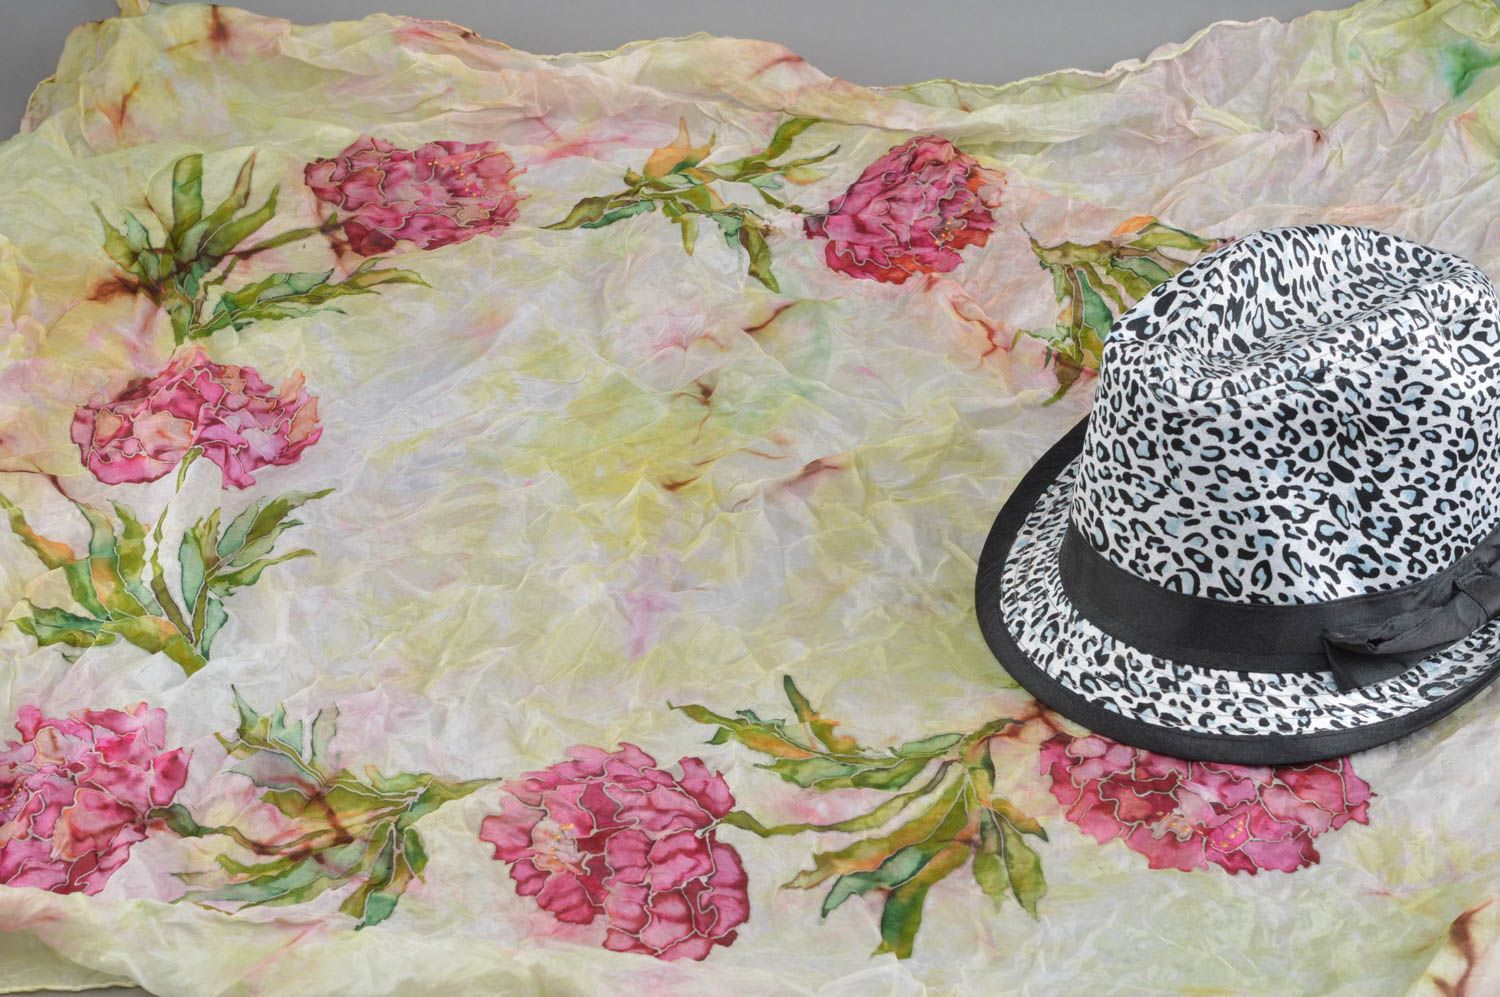 Шелковая шаль с цветами расписанная в технике холодного батика ручной работы фото 2